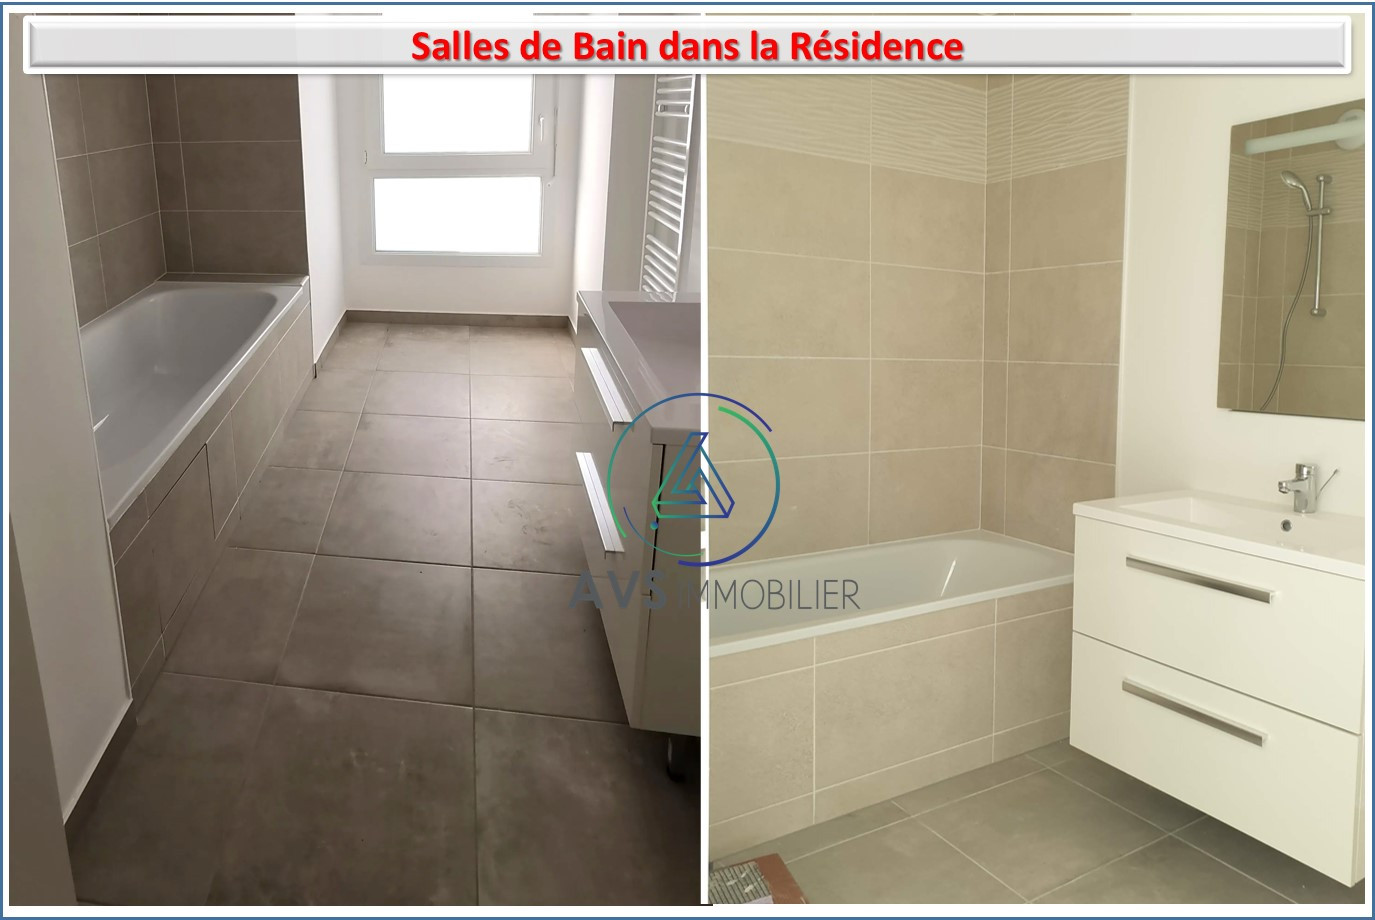 Appartement sur Savigny sur Orge ; 333 400 €  ; Vente Réf. AVS1889